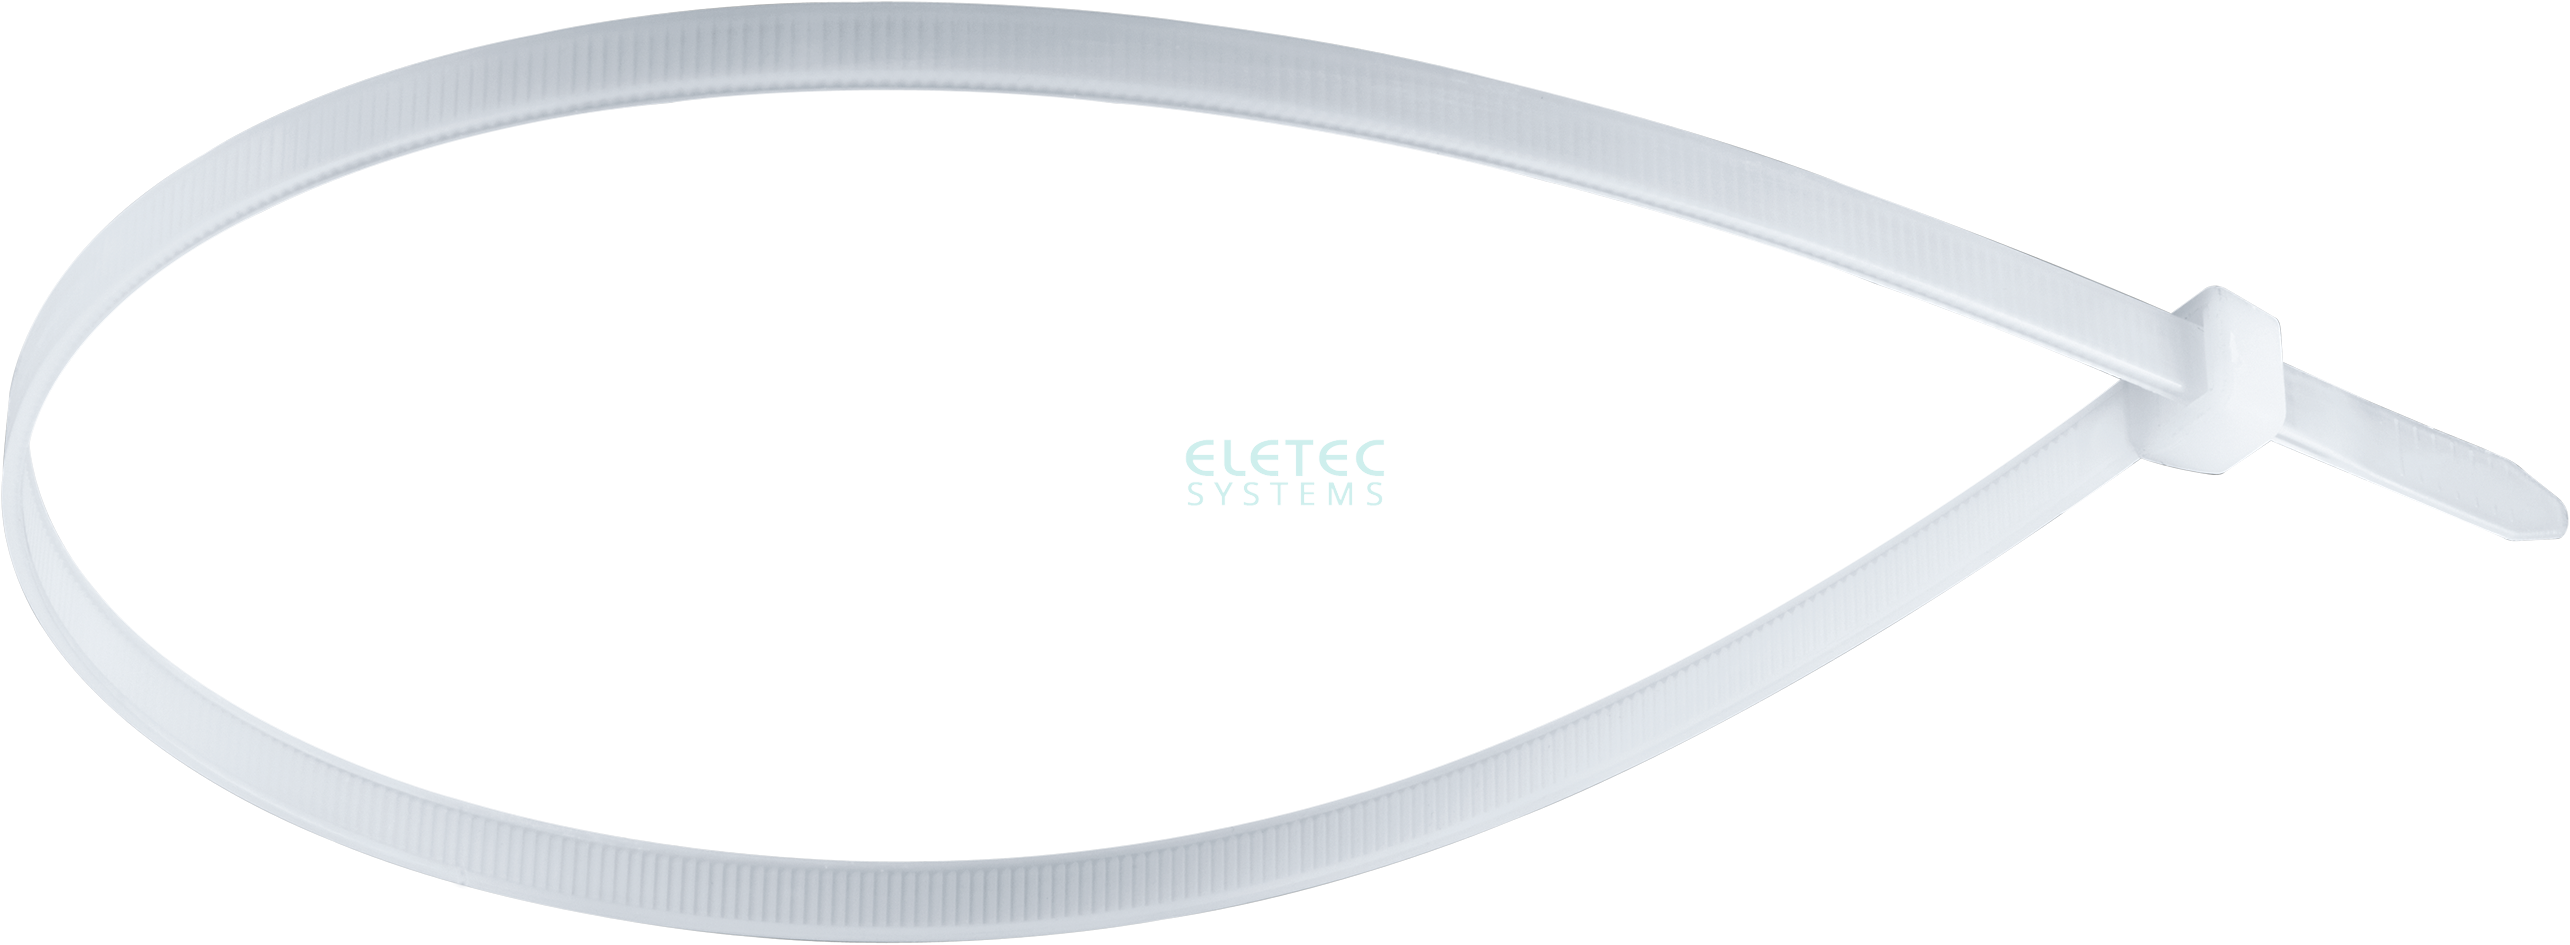 картинка Стяжка для кабеля 100х2,5 бесцветная (100 шт) Eletec Systems